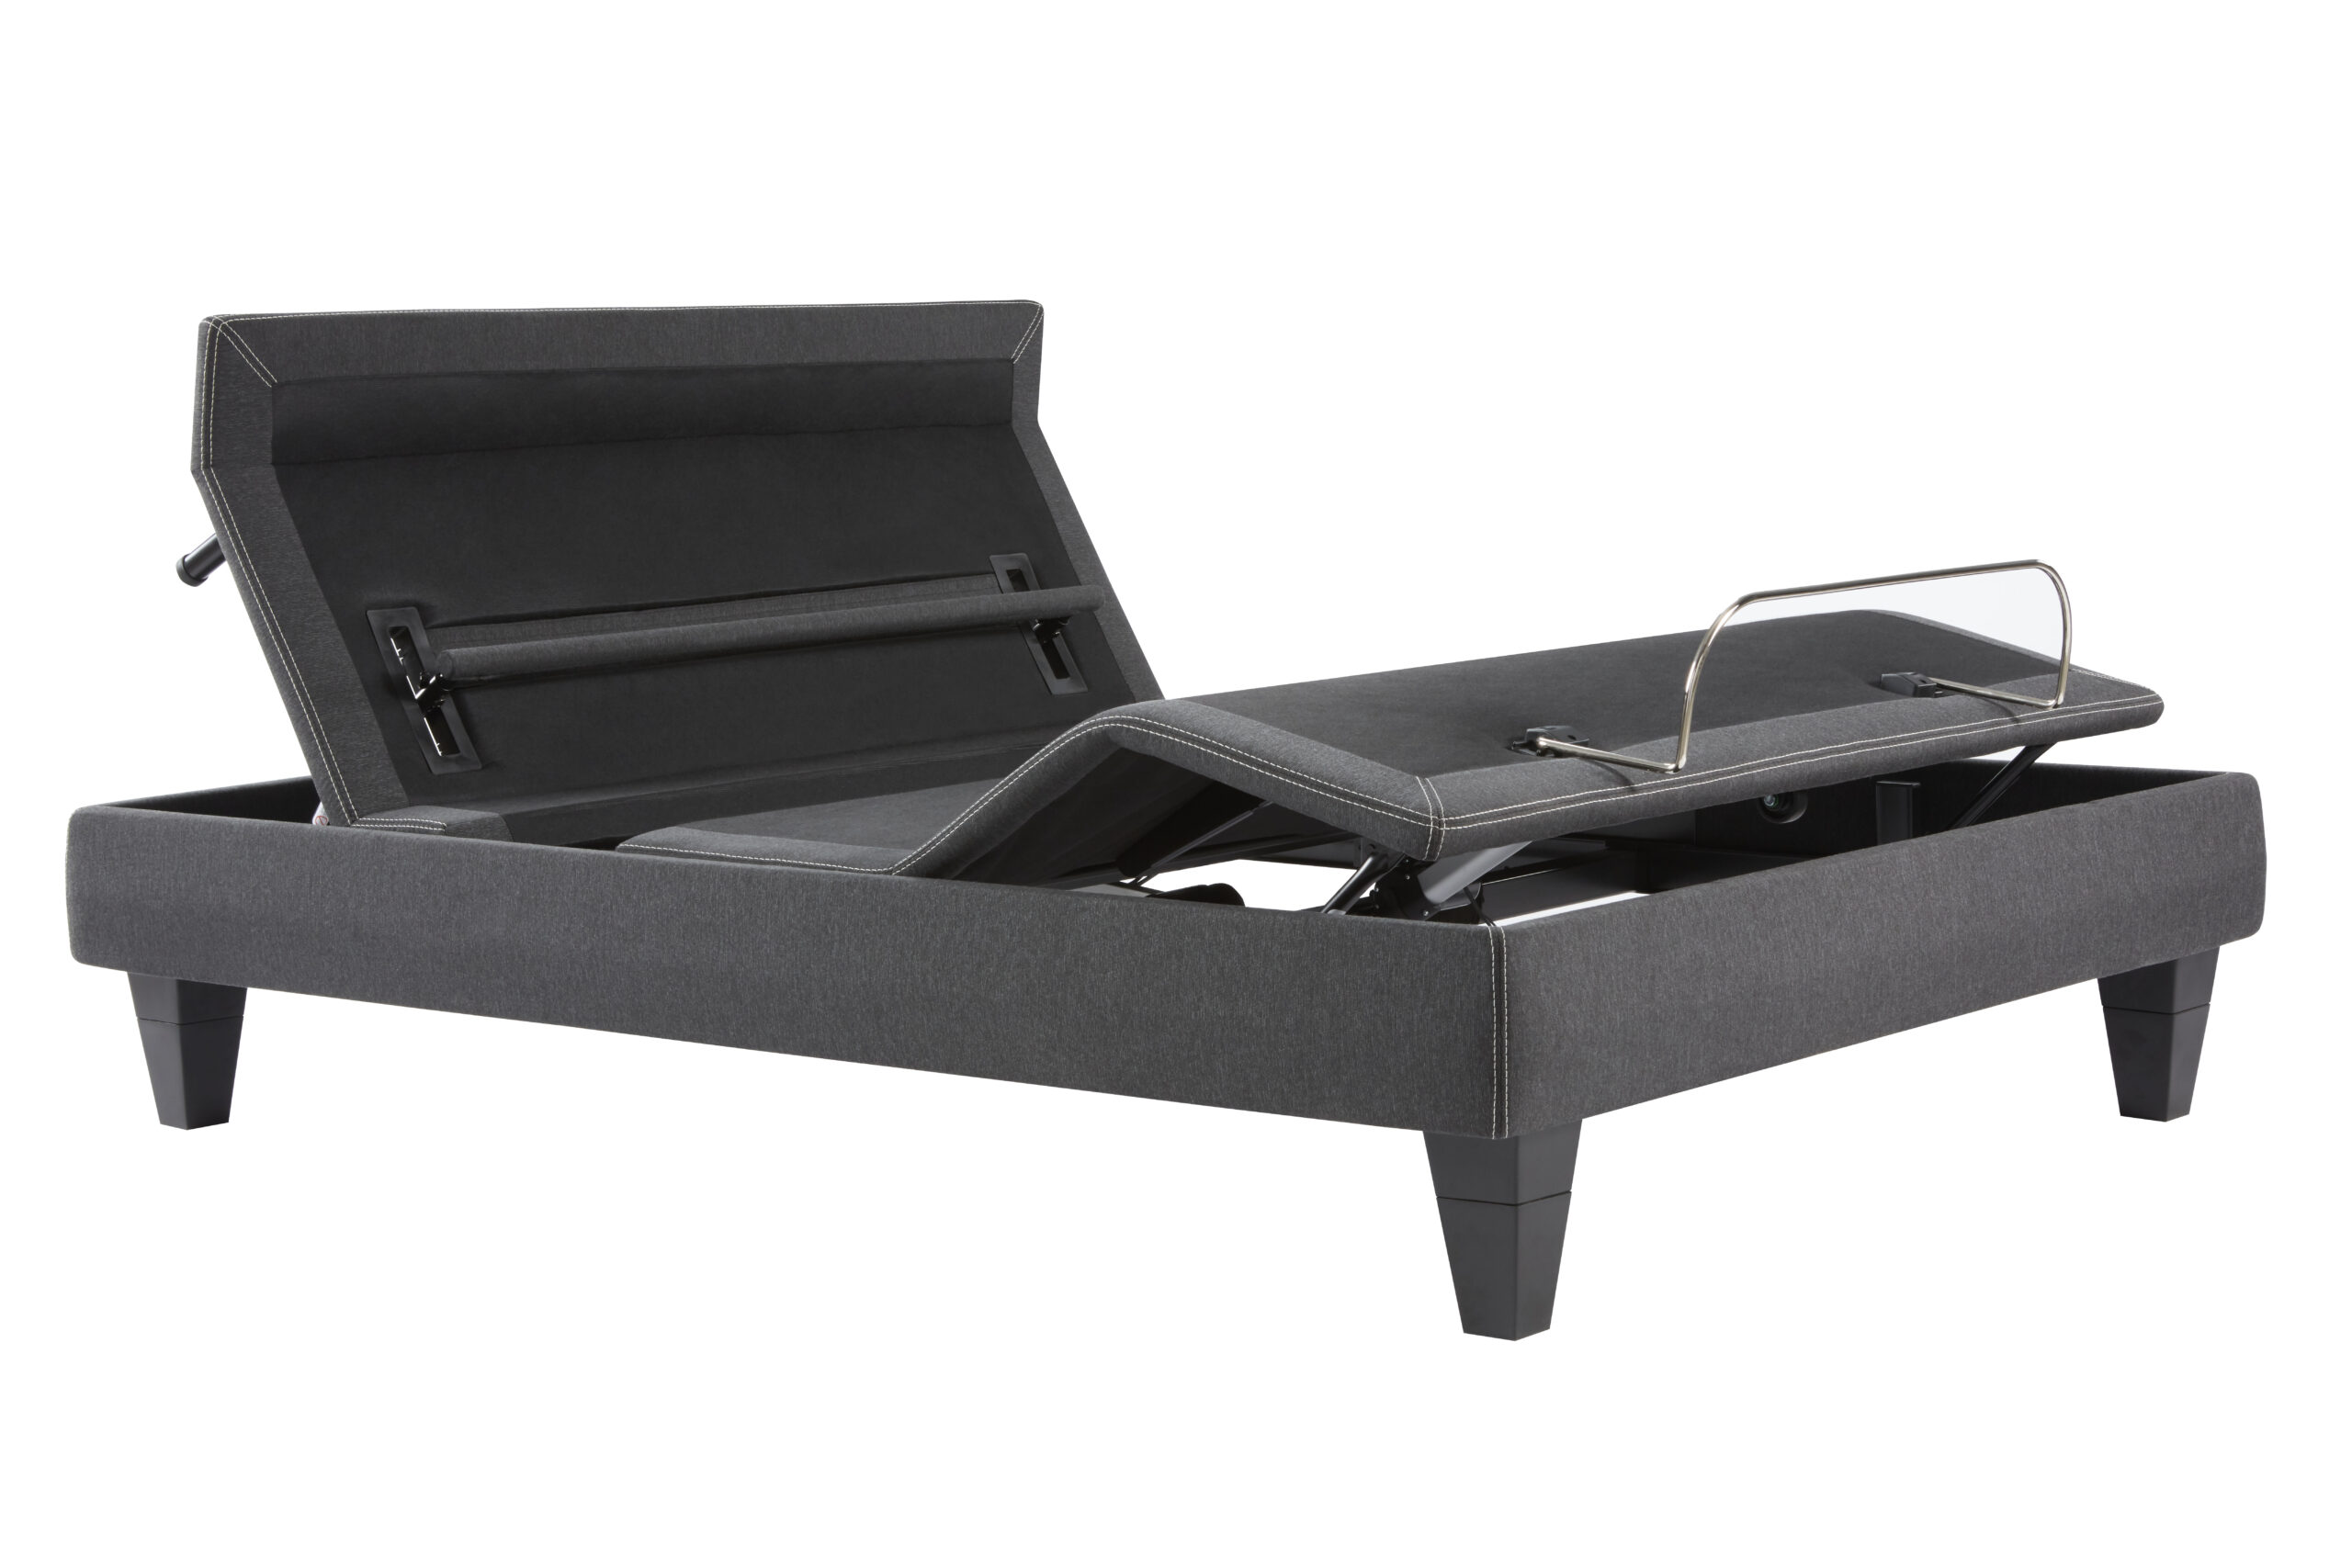 S350 Cozy Adjustable Bed (Black)